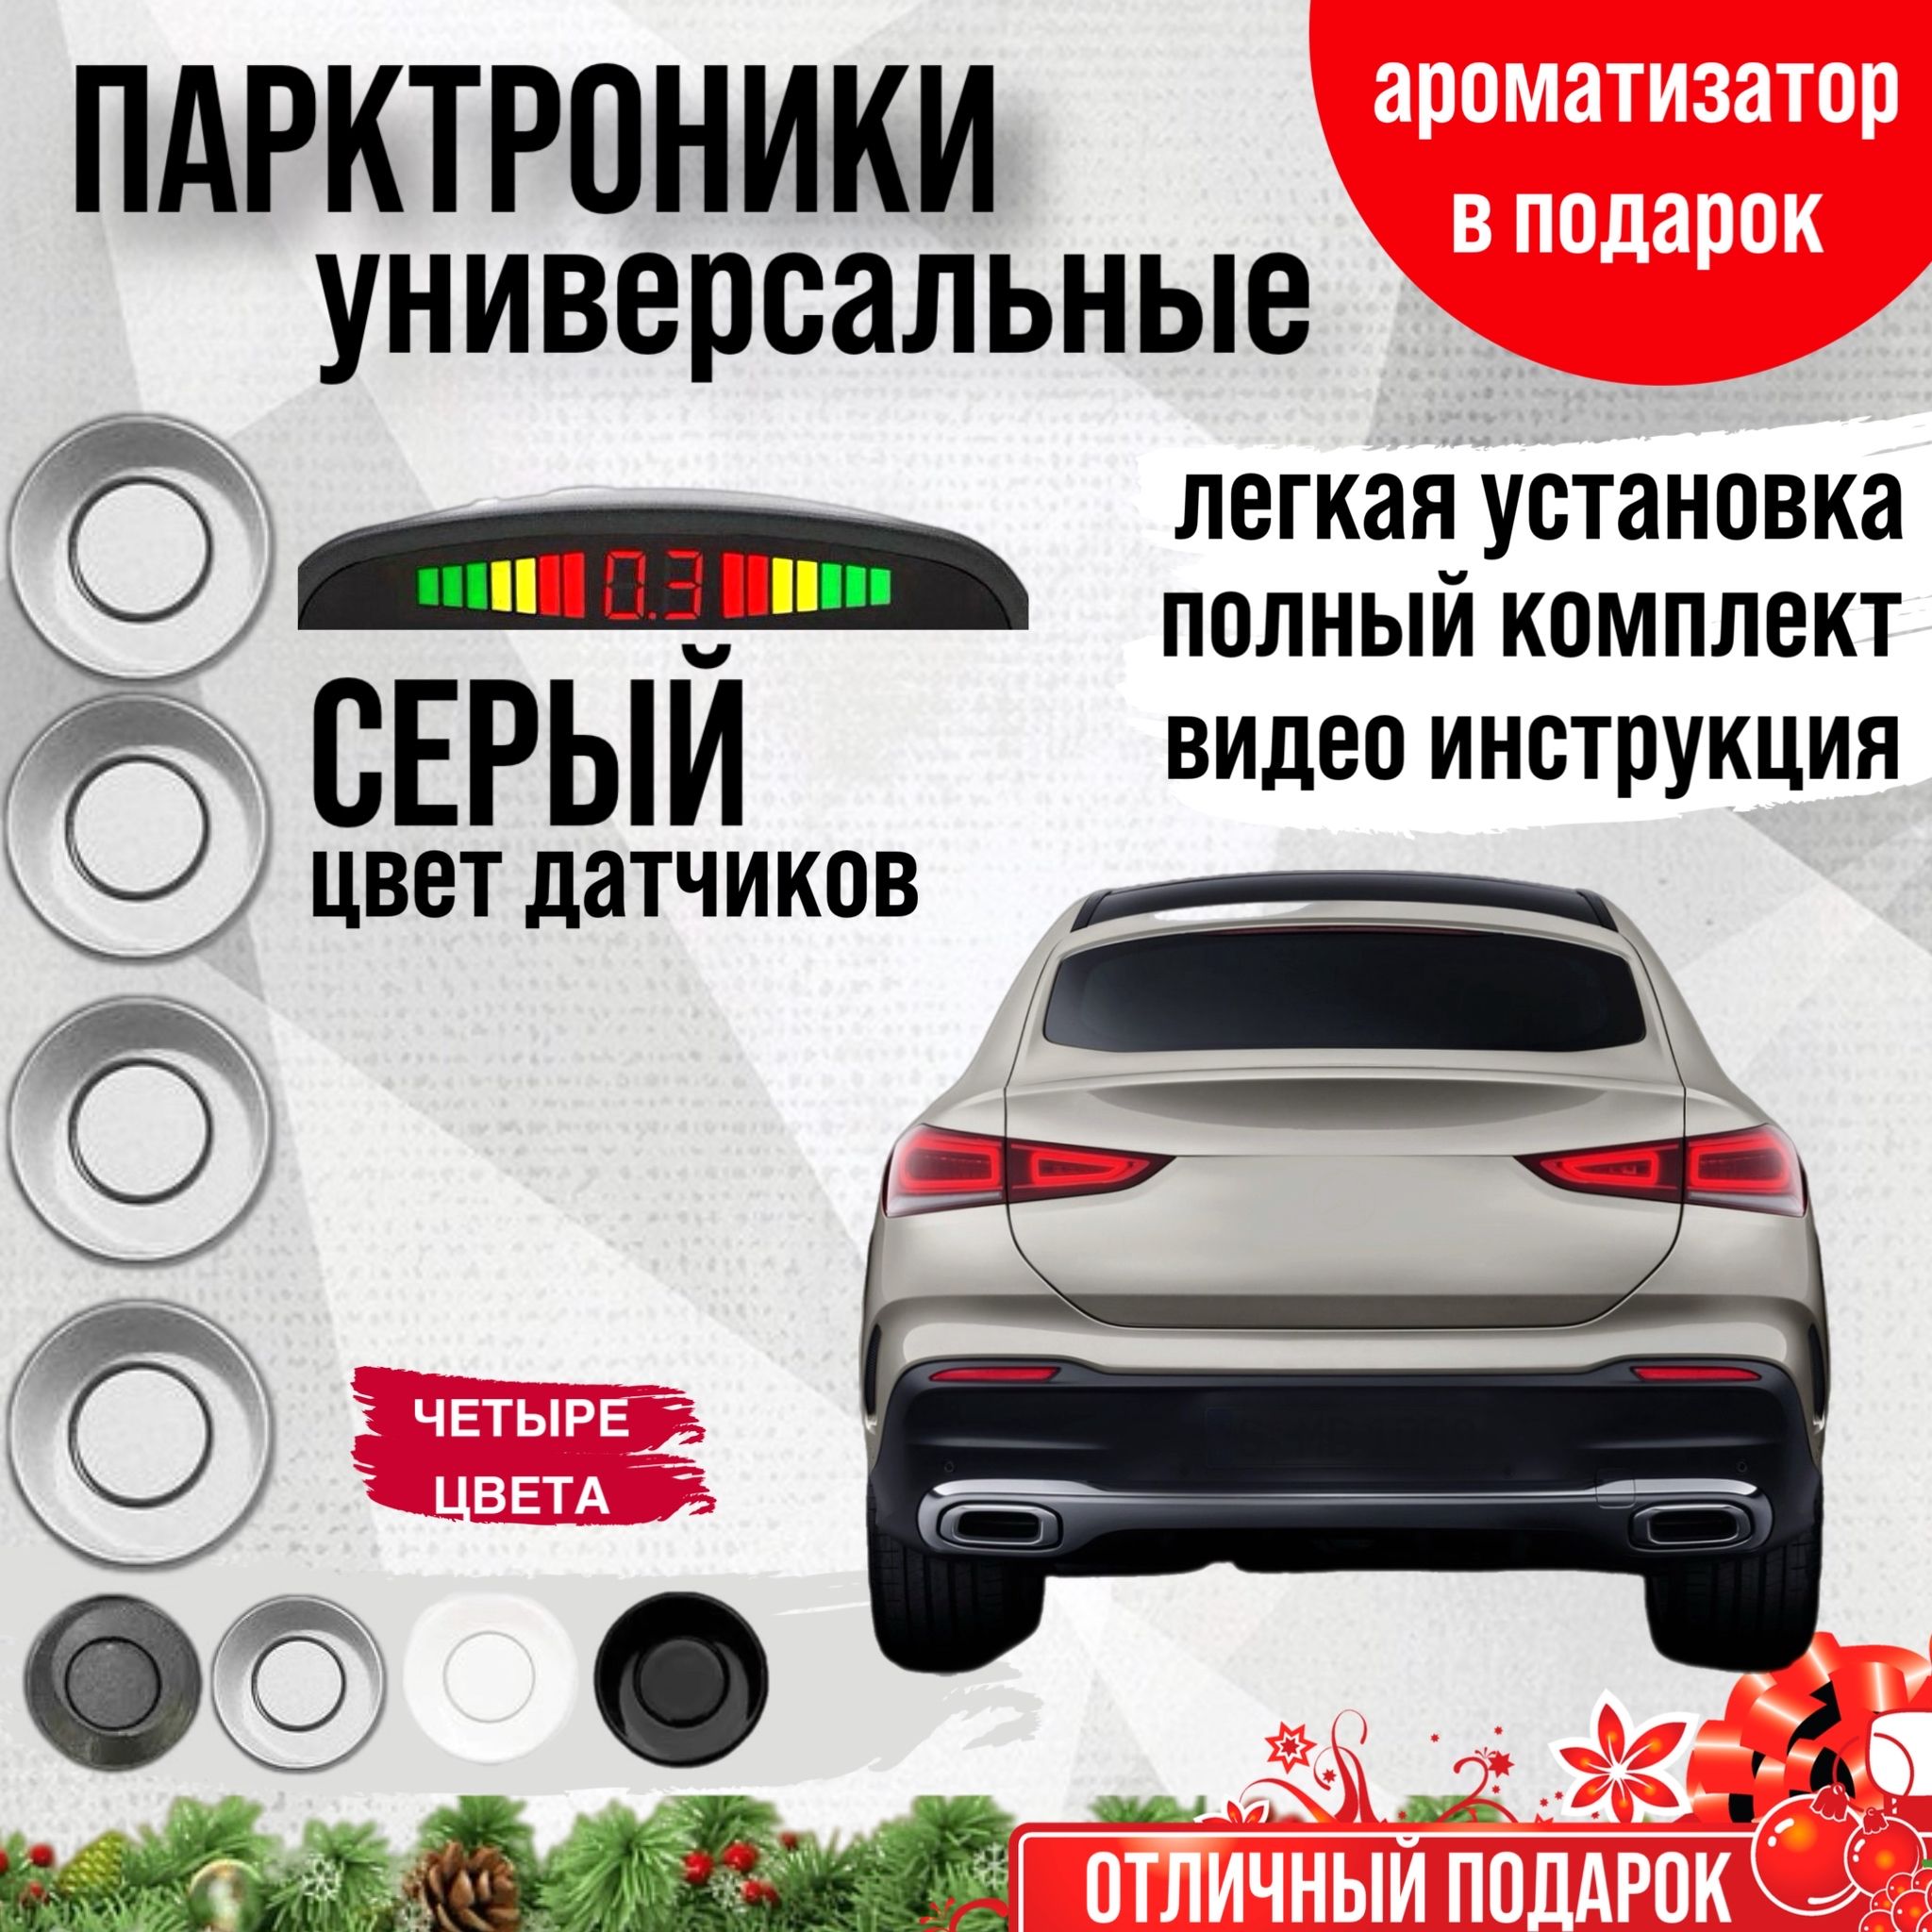 Парковочный радар купить на авто, лучшая цена в Москве, АвтоСтрим